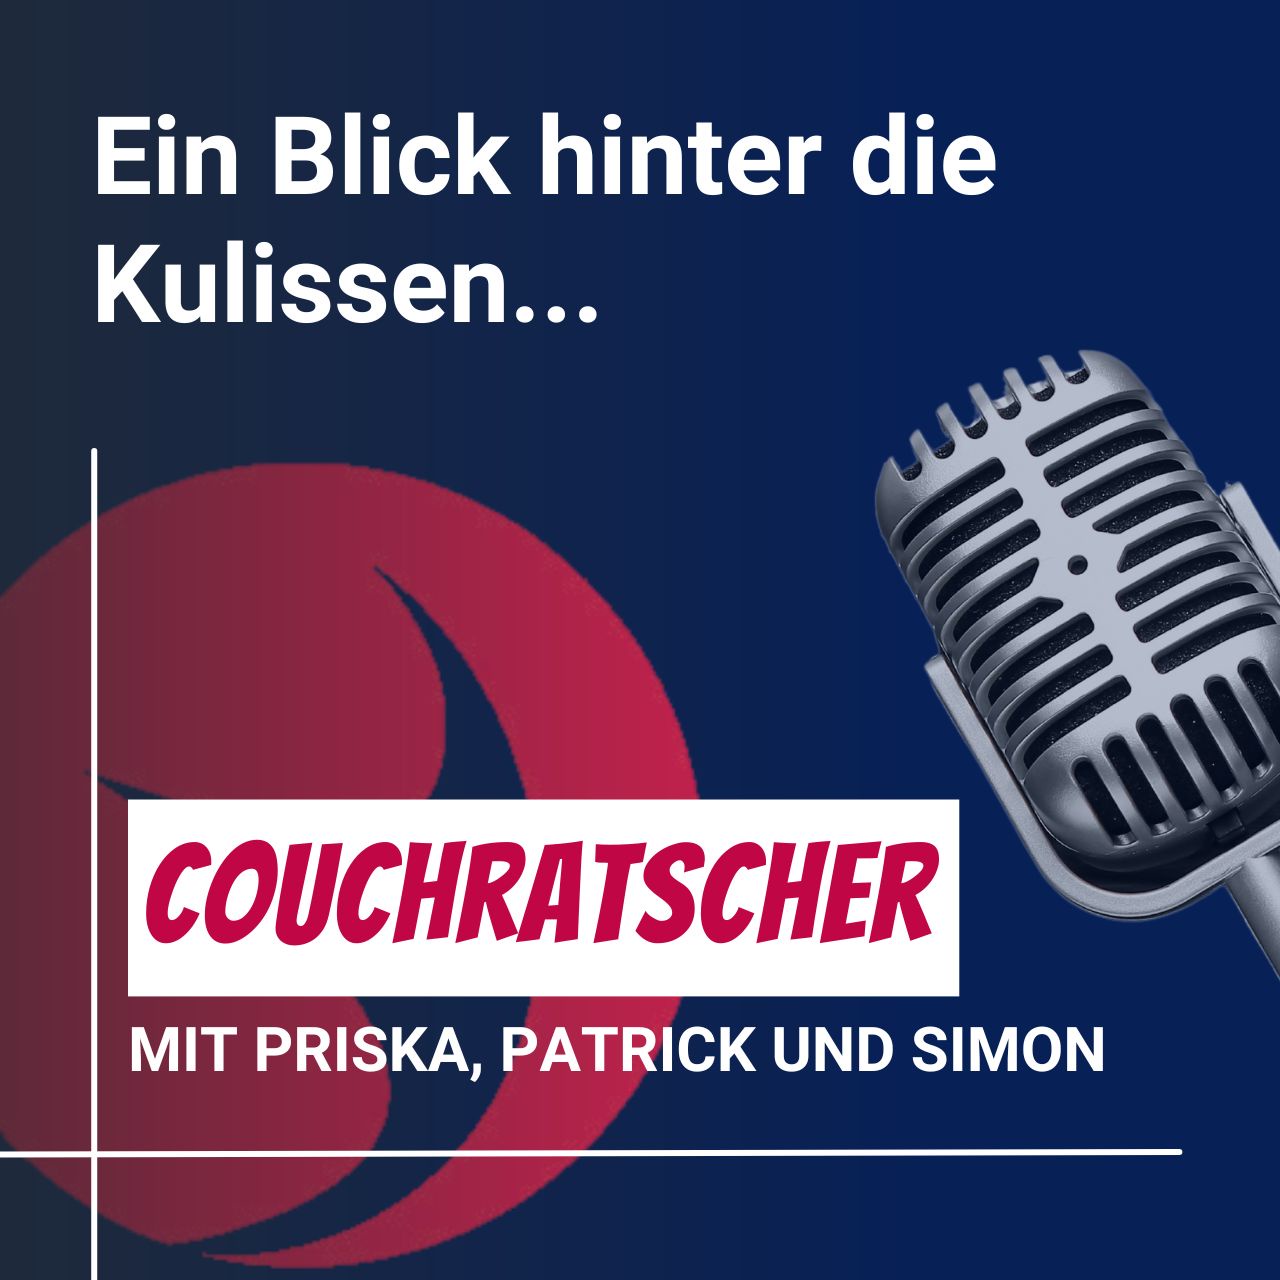 #15 Couchratscher mit Priska, Patrick und Simon - Ein Blick hinter die Kulissen